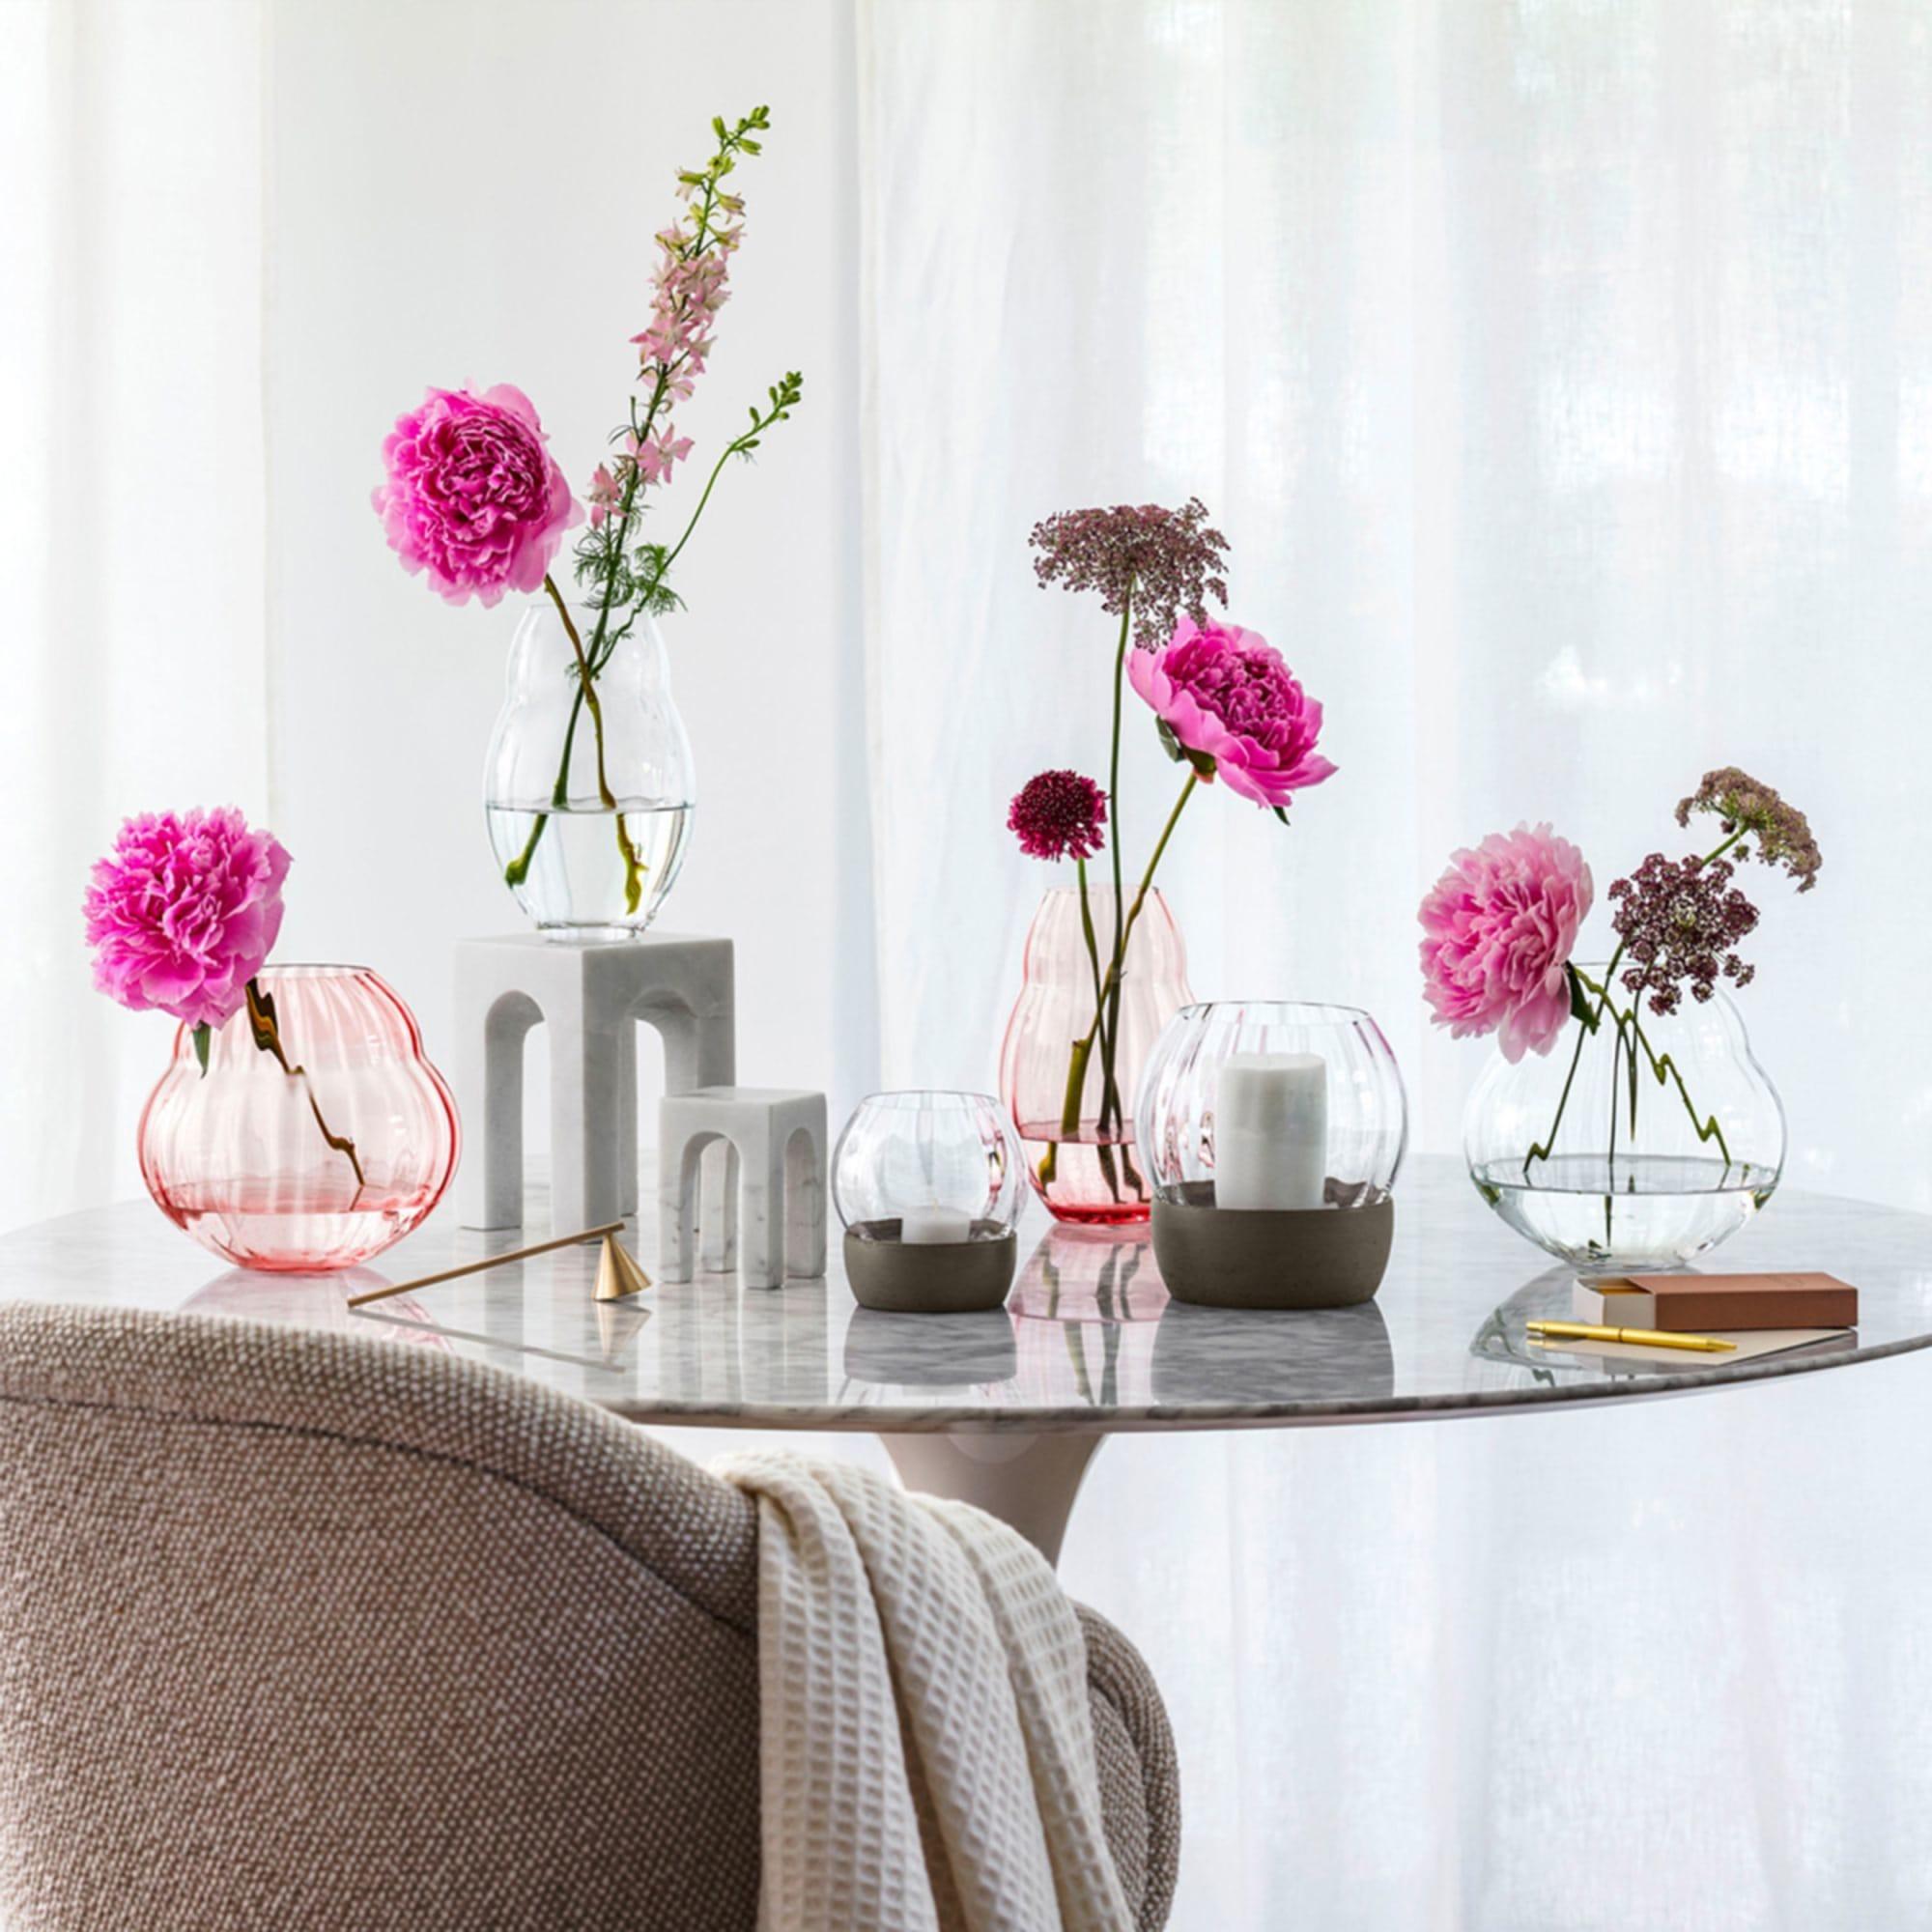 Villeroy & Boch Rose Garden Home Vase 20cm Pink Image 4